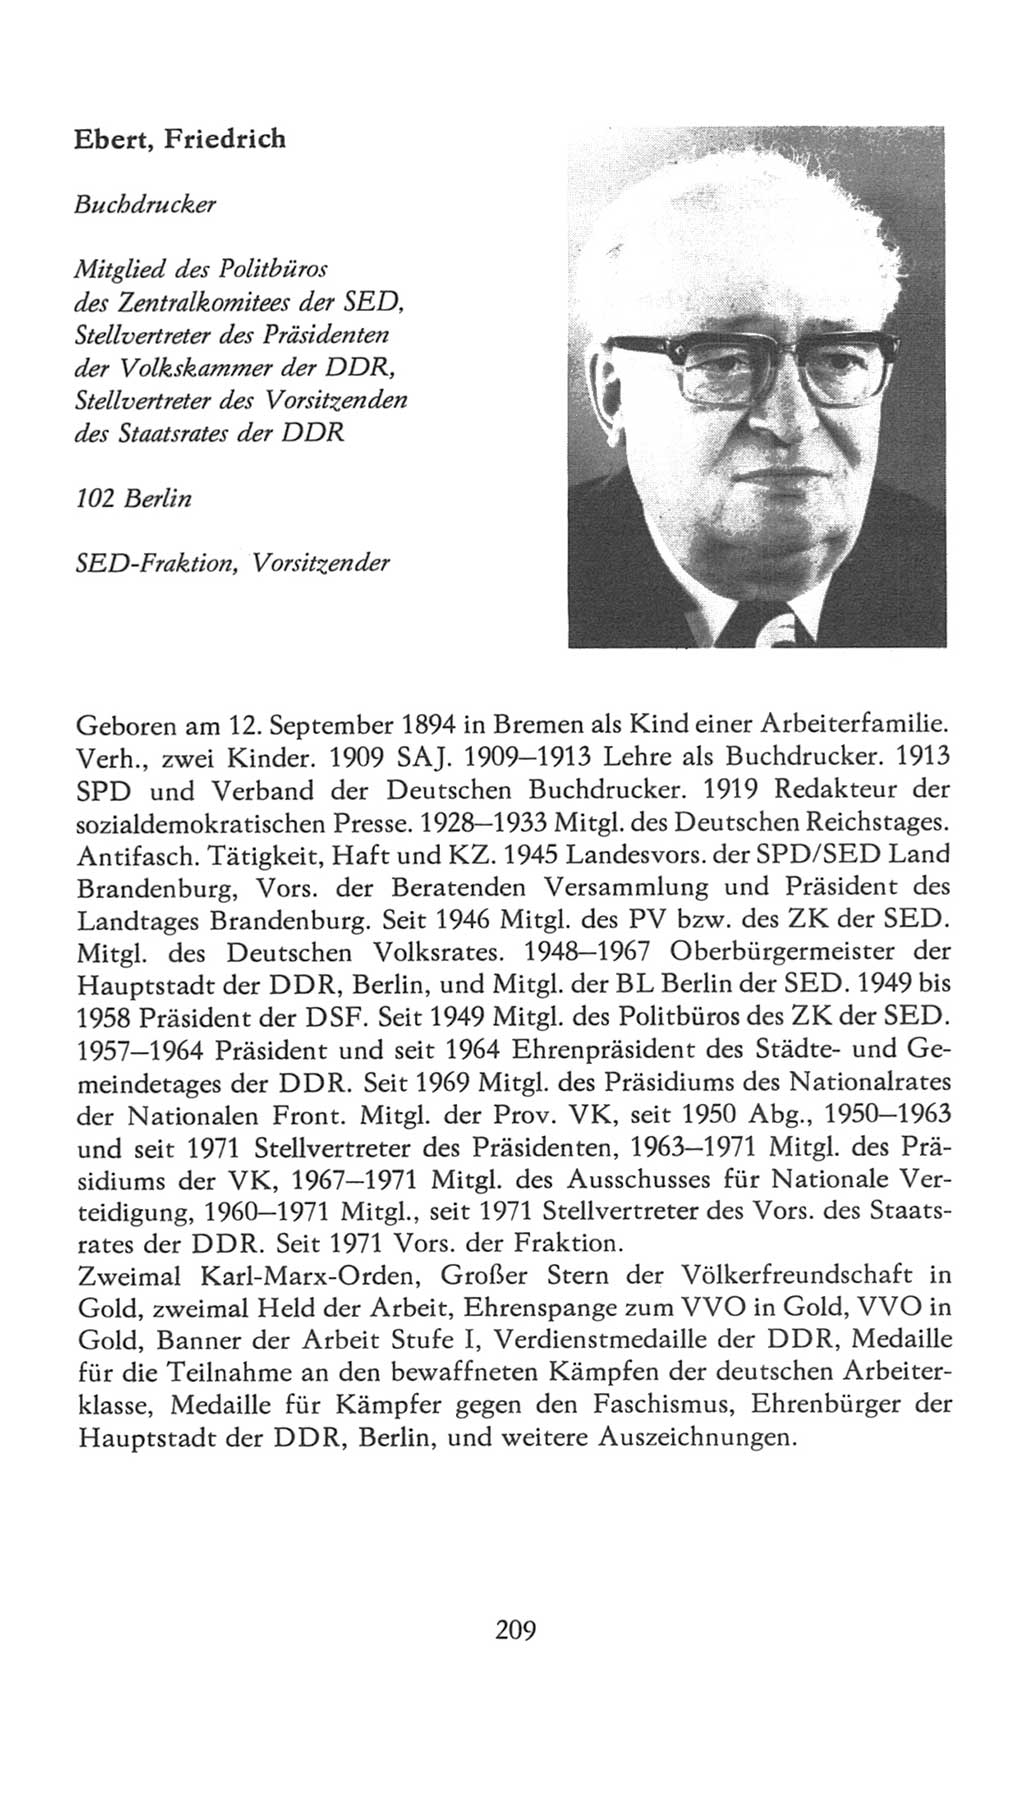 Volkskammer (VK) der Deutschen Demokratischen Republik (DDR), 7. Wahlperiode 1976-1981, Seite 209 (VK. DDR 7. WP. 1976-1981, S. 209)